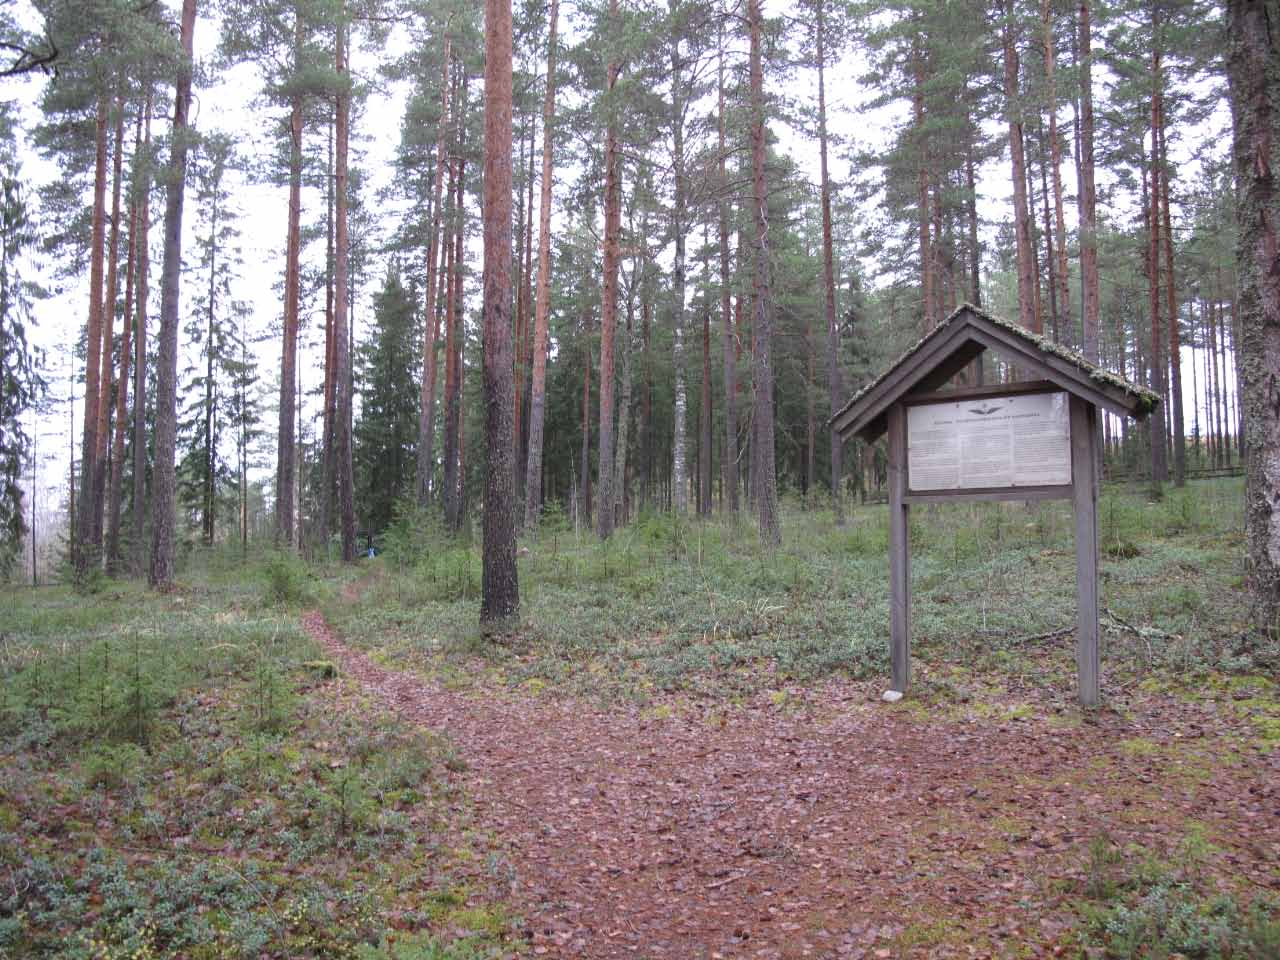 Kuva: Etelästä. Lahden museot / Päijät-Hämeen alueellinen vastuumuseo. CC BY 4.0 Hannu Takala 1.11.2020